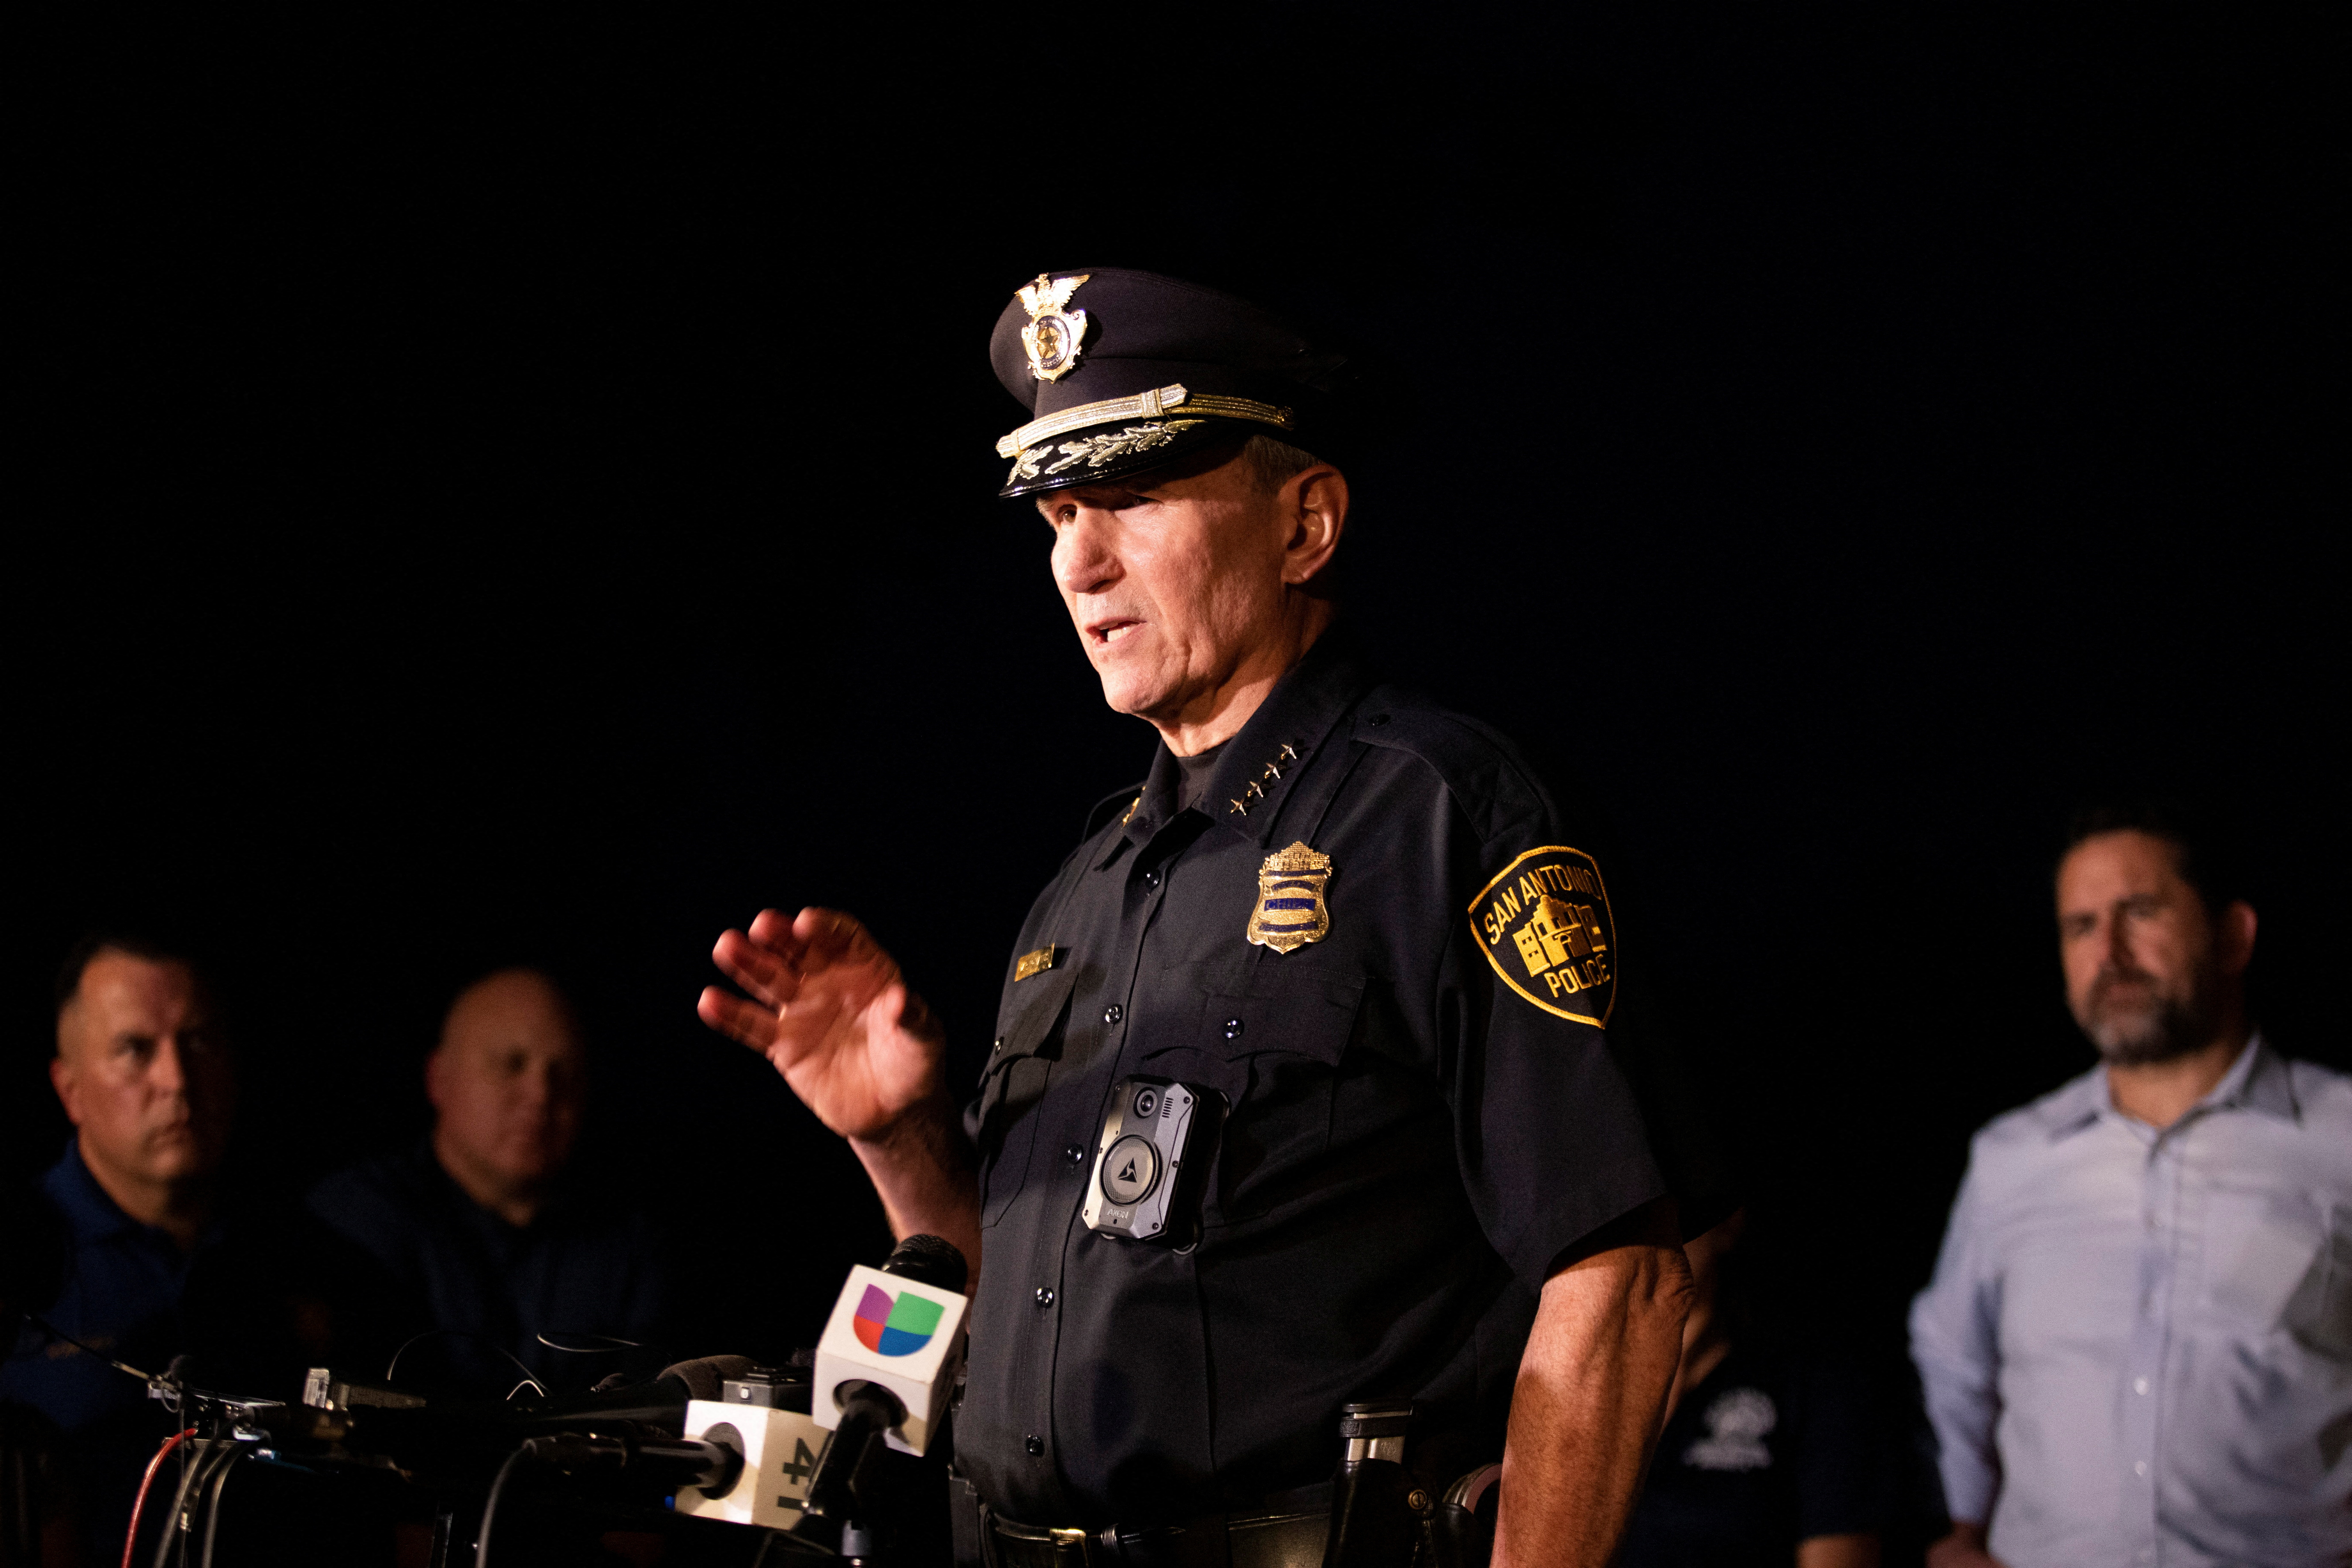 El jefe de la policía de San Antonio, William McManus en la escena donde fueron encontrados 46 migrantes muertos en un tráiler

Foto: REUTERS/Kaylee Greenlee Beal